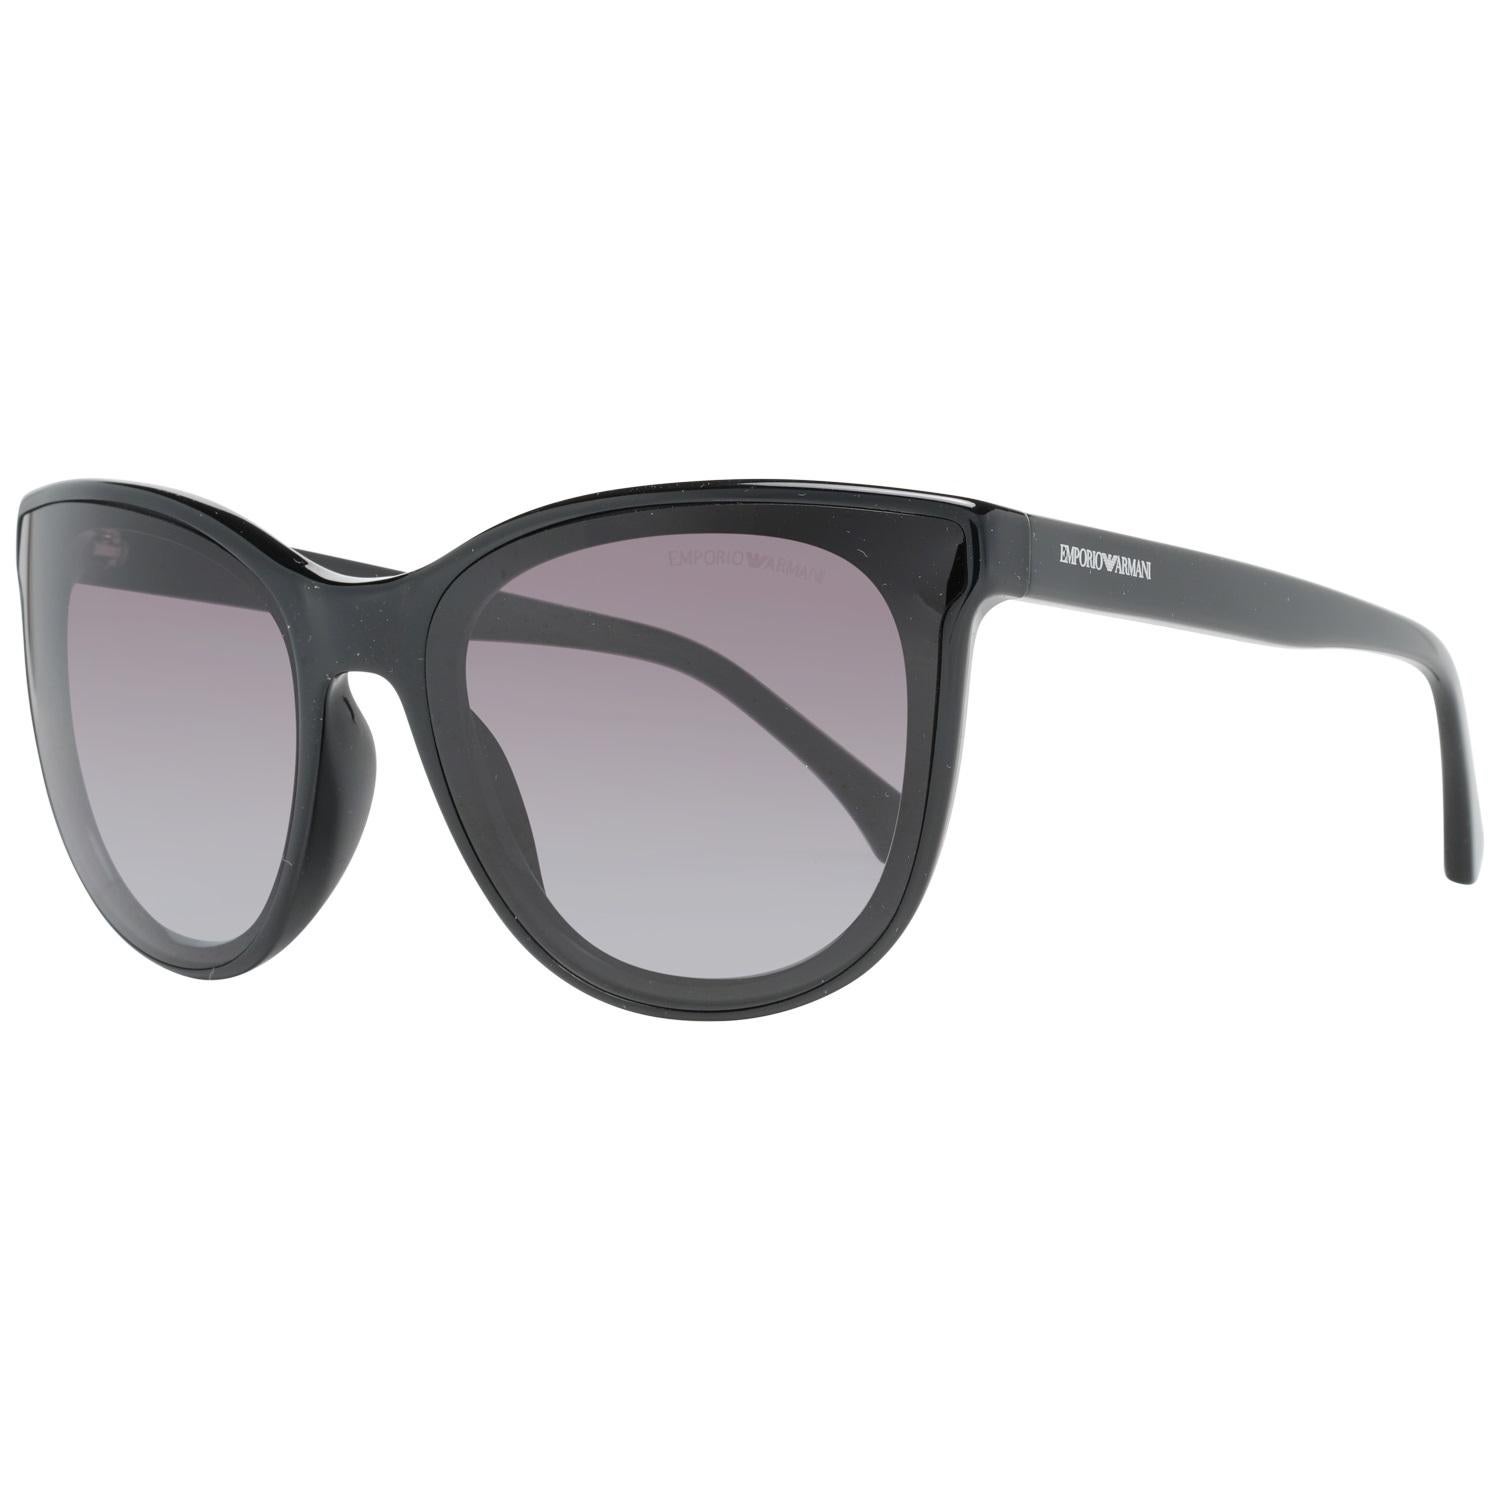 Emporio Armani Mint Frauen Sonnenbrille EA4125F. Schwarzer Acetatrahmen mit Katzenaugen. Verlaufsgraue Gläser. Eingeführt

Bedingung

A+ - MINT

Nie getragen oder benutzt. Wie auf den Bildern zu sehen.

Einzelheiten

MATERIAL: Kunststoff

FARBE: